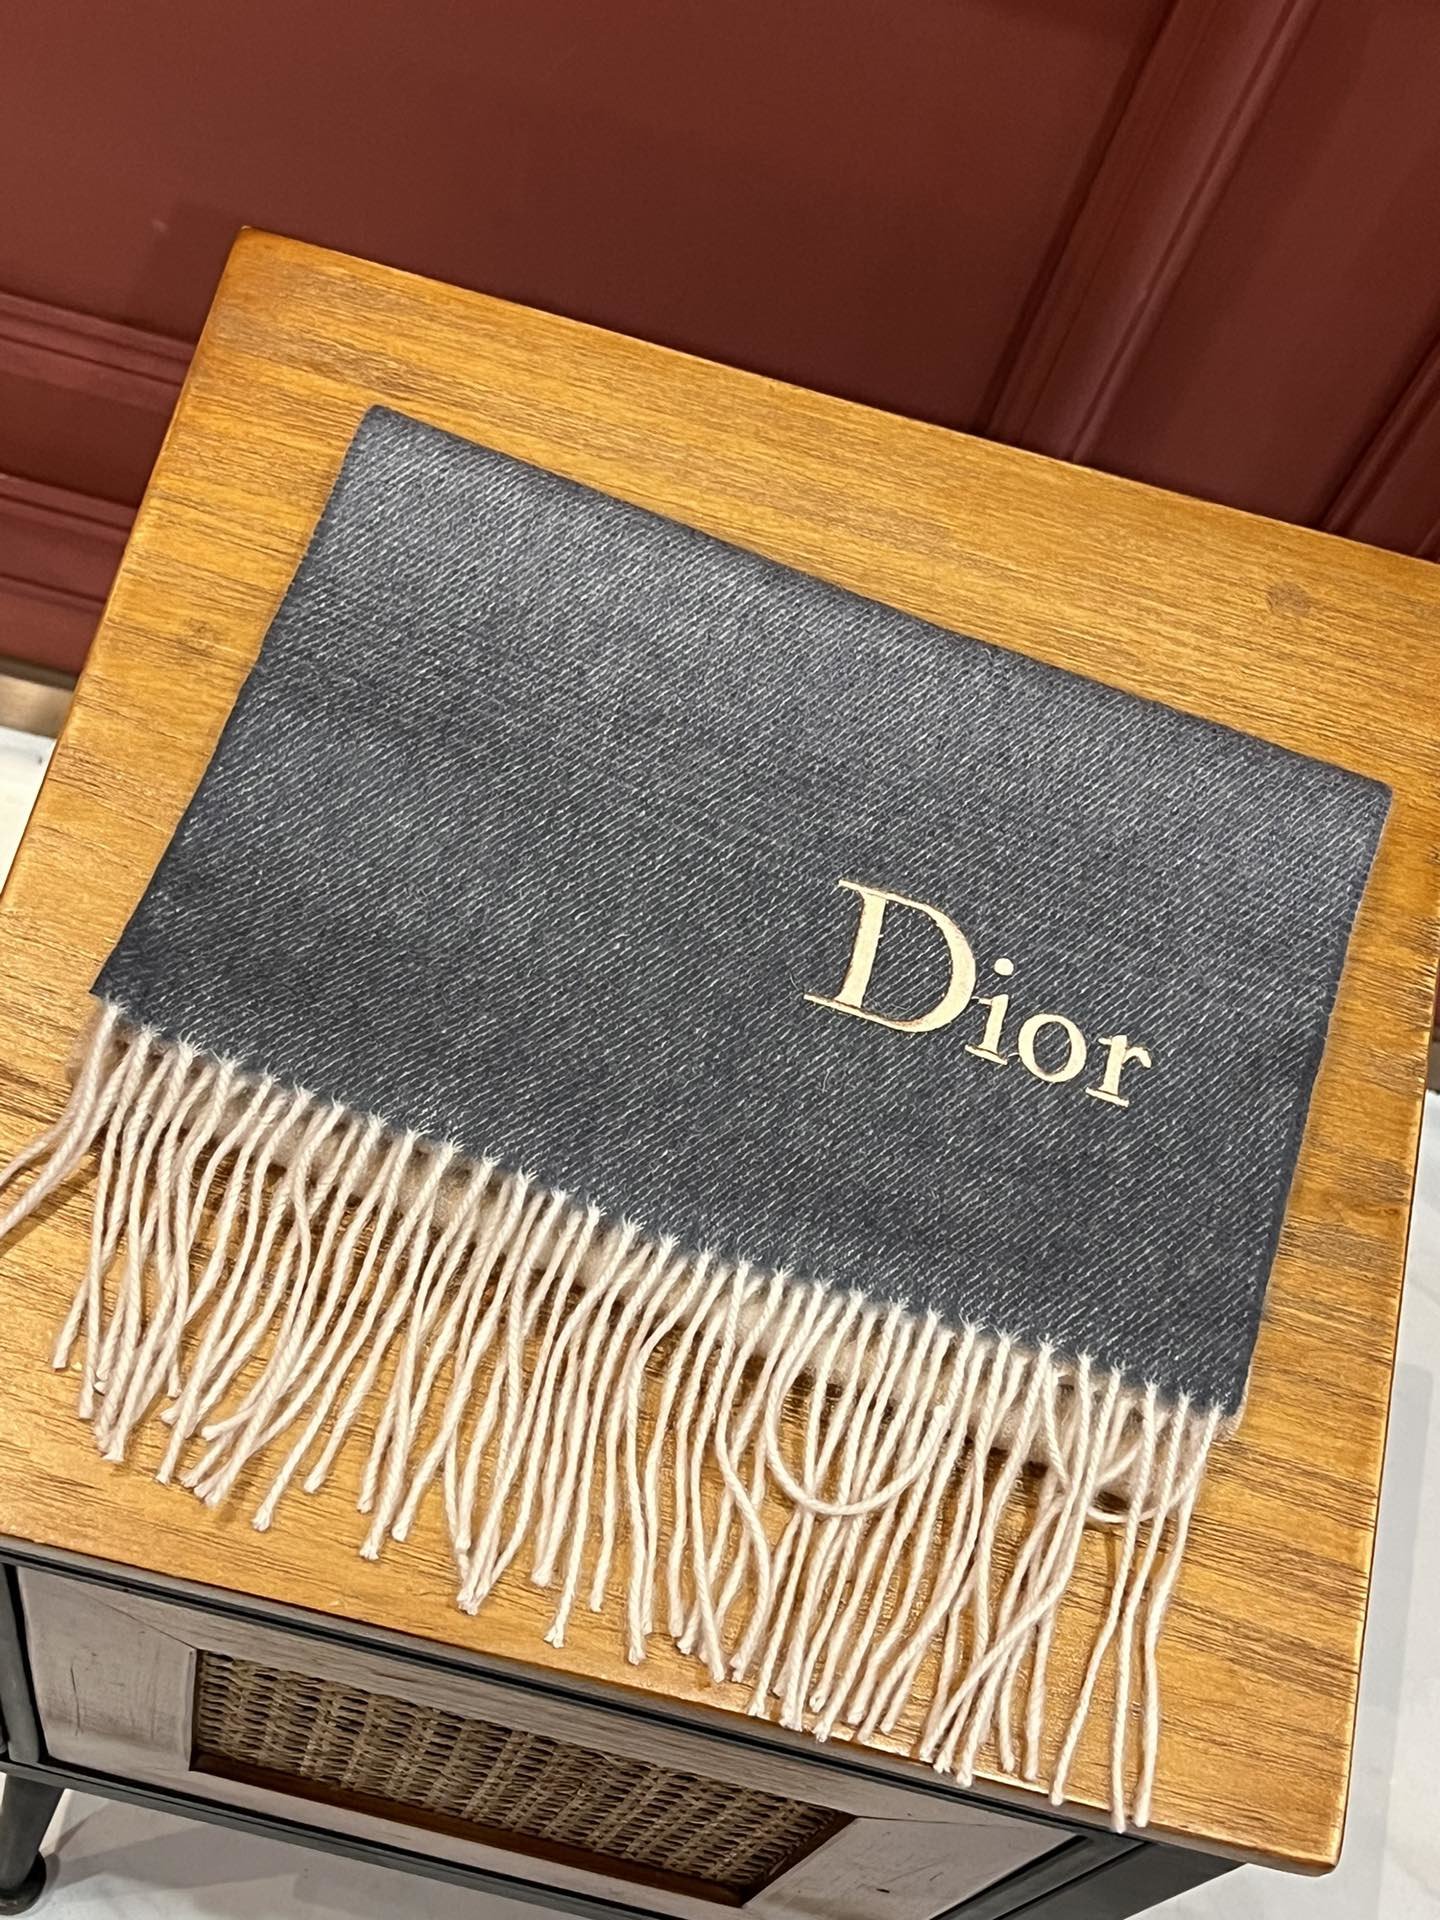 D家出口的订单设计非常简单但那Logo的点缀就是让围巾显得非常高级优雅高端羊绒围巾设计向来都很简约但就是